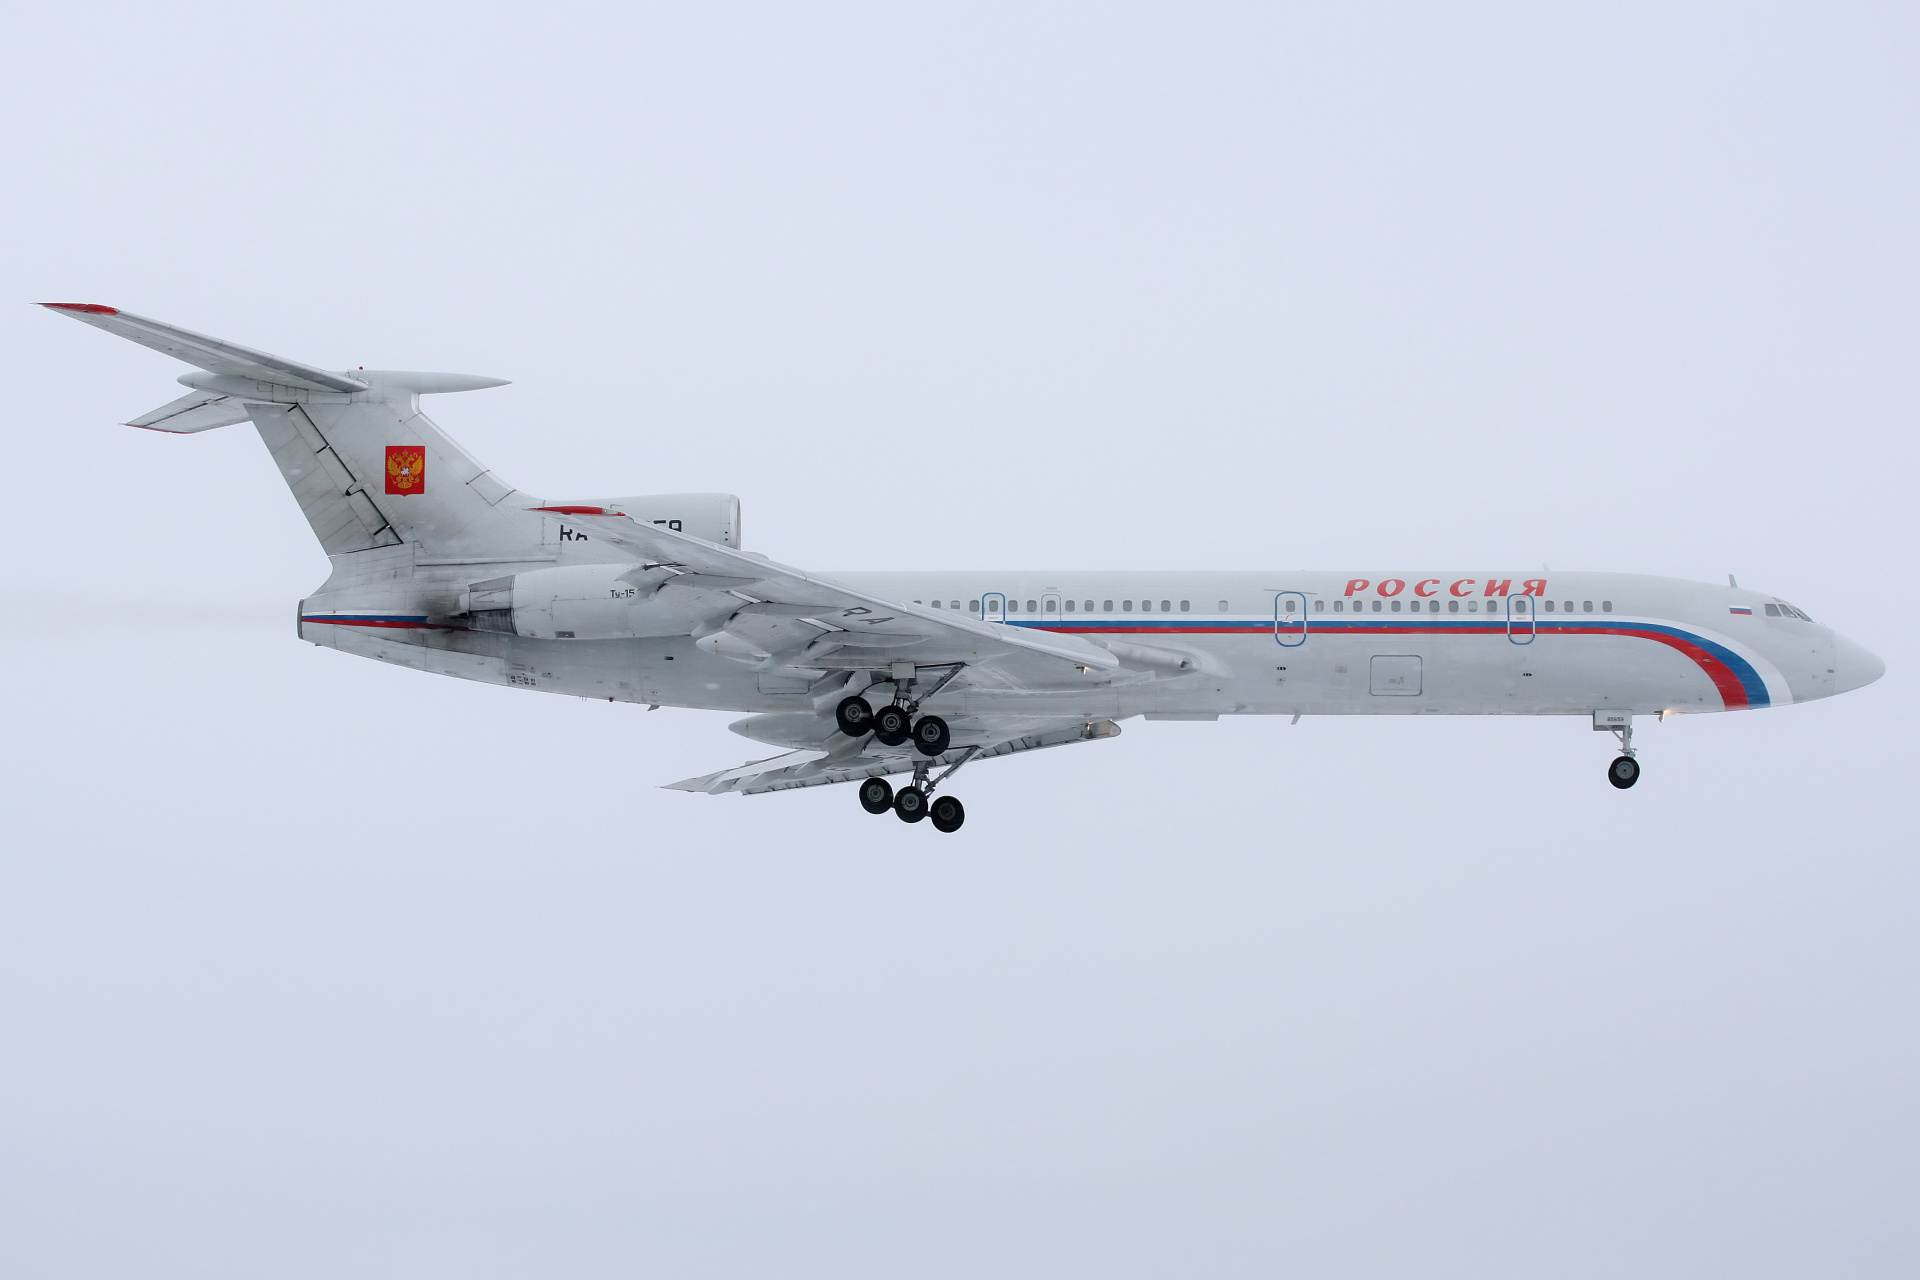 RA-85659, Russia State Transport Company (Aircraft » EPWA Spotting » Tupolev Tu-154M)